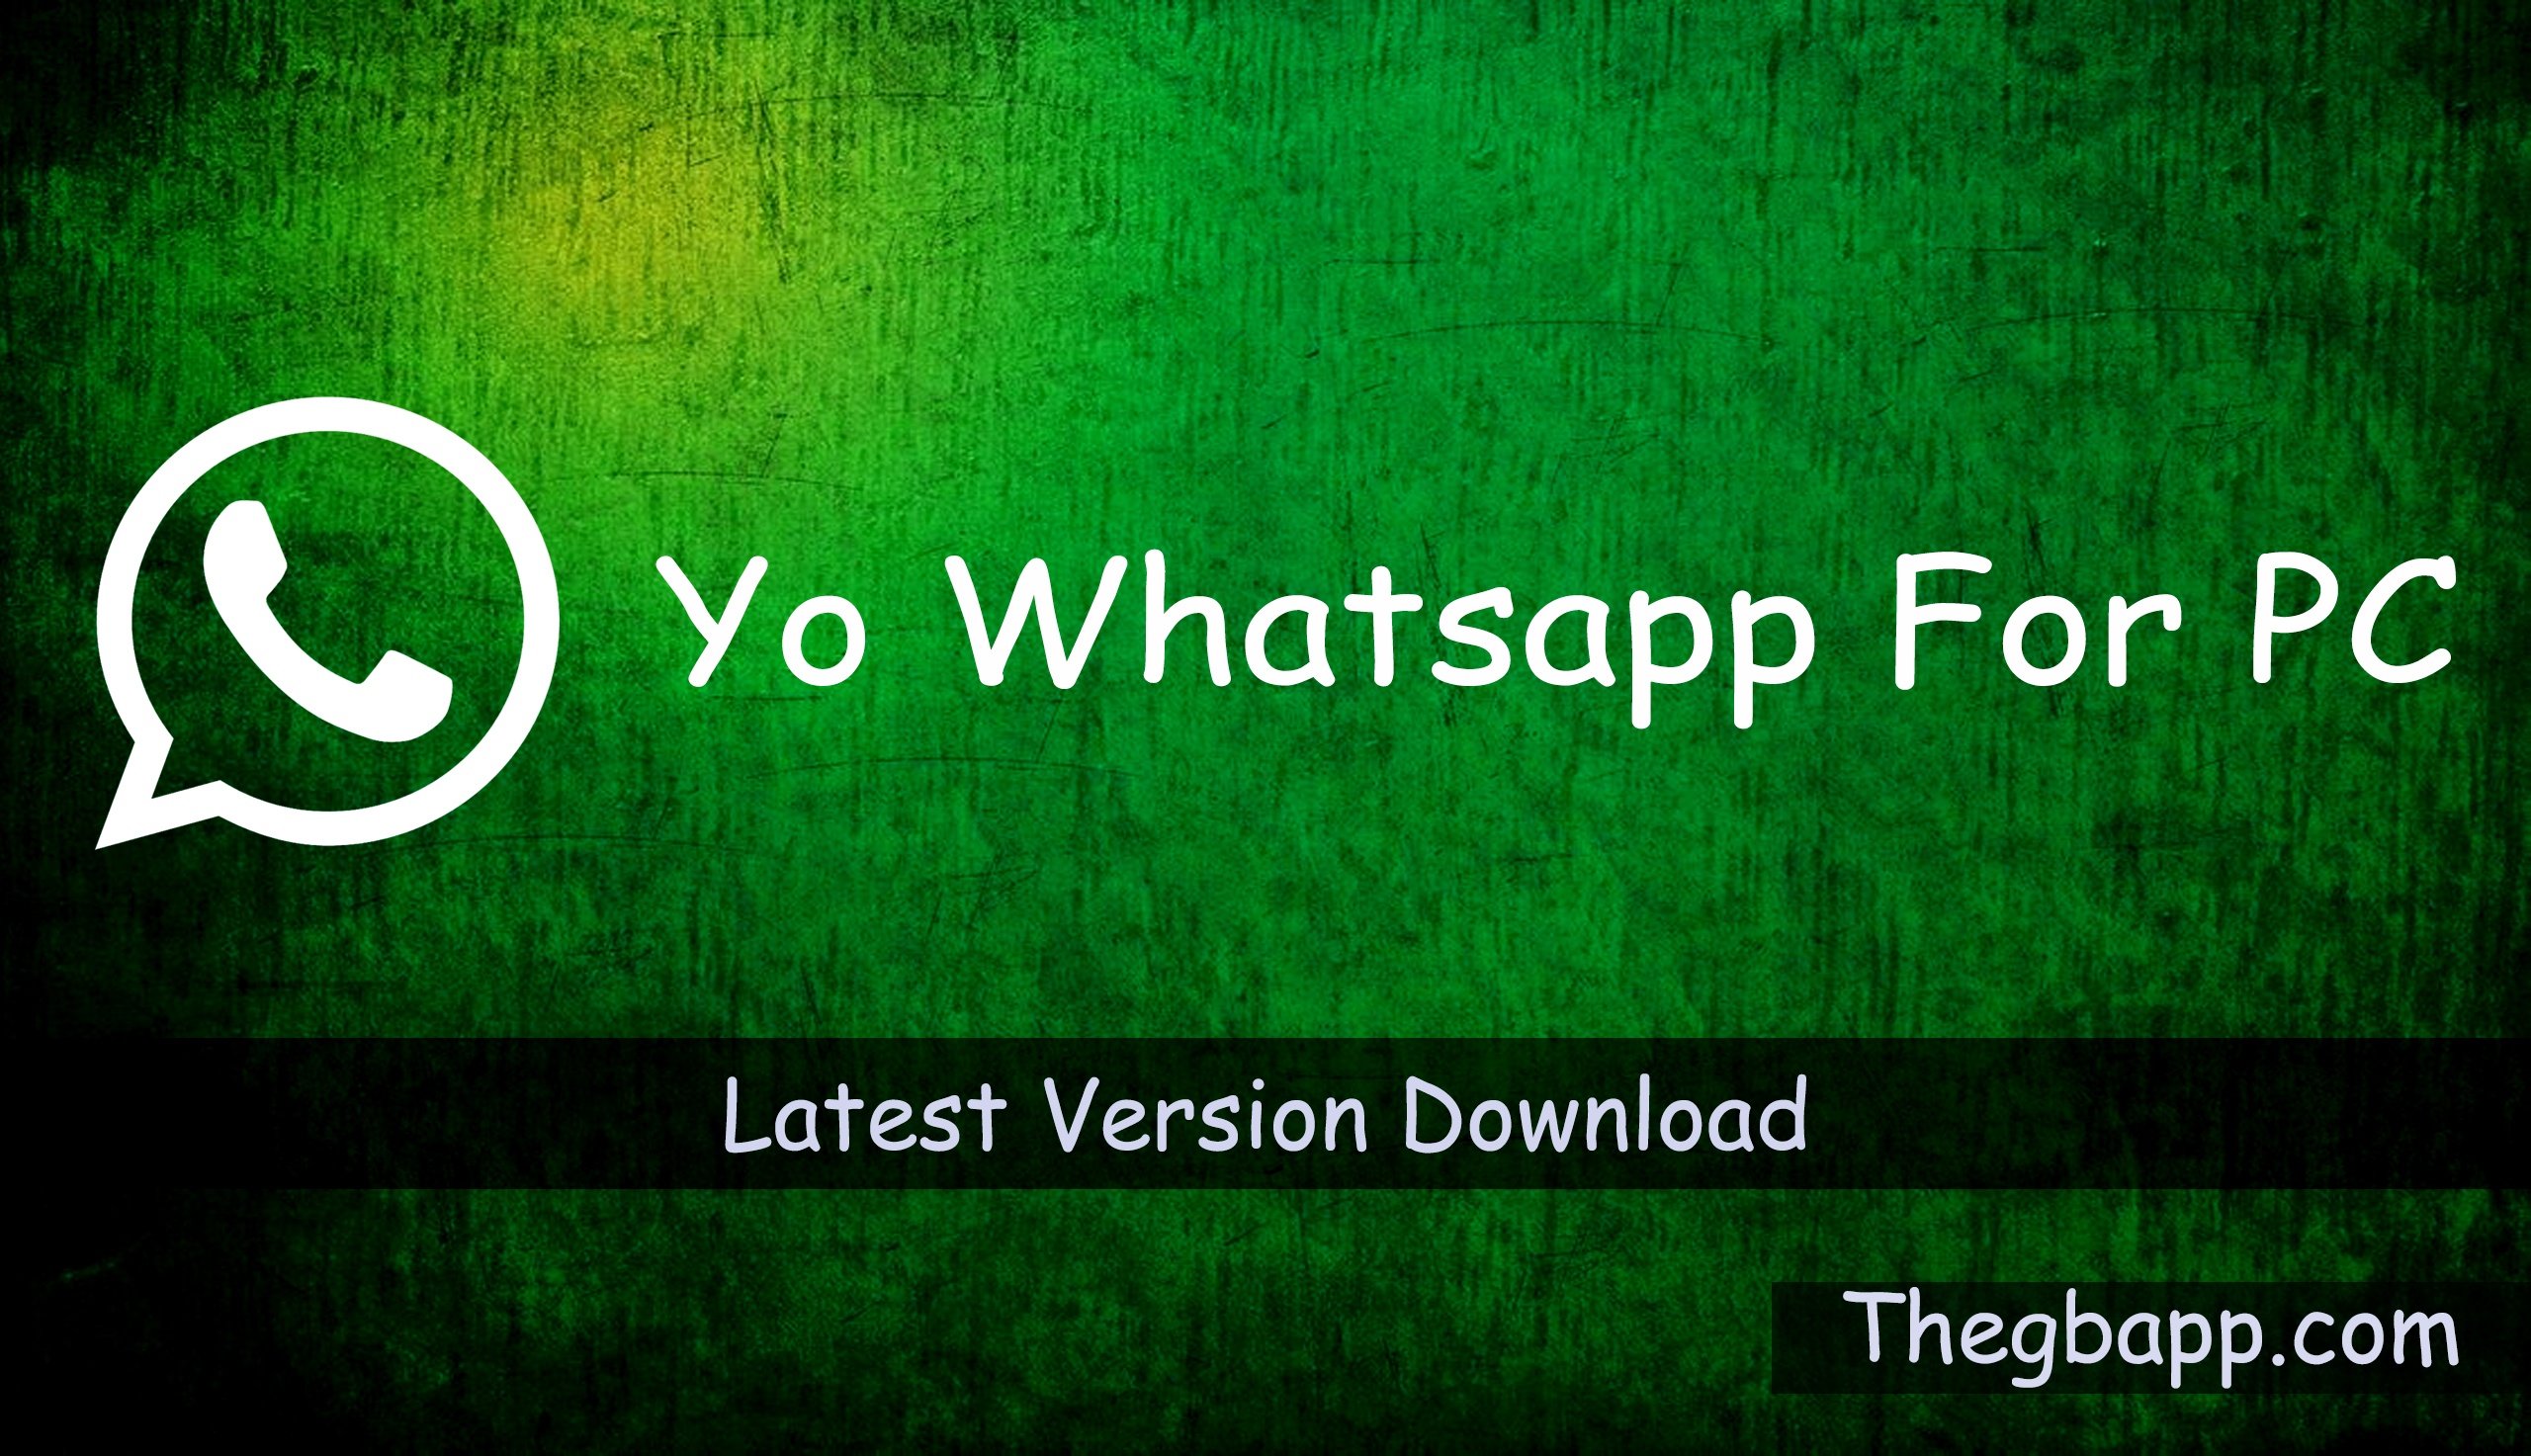 Yo Whatsapp For PC, Windows & Mac - Free Download 2022